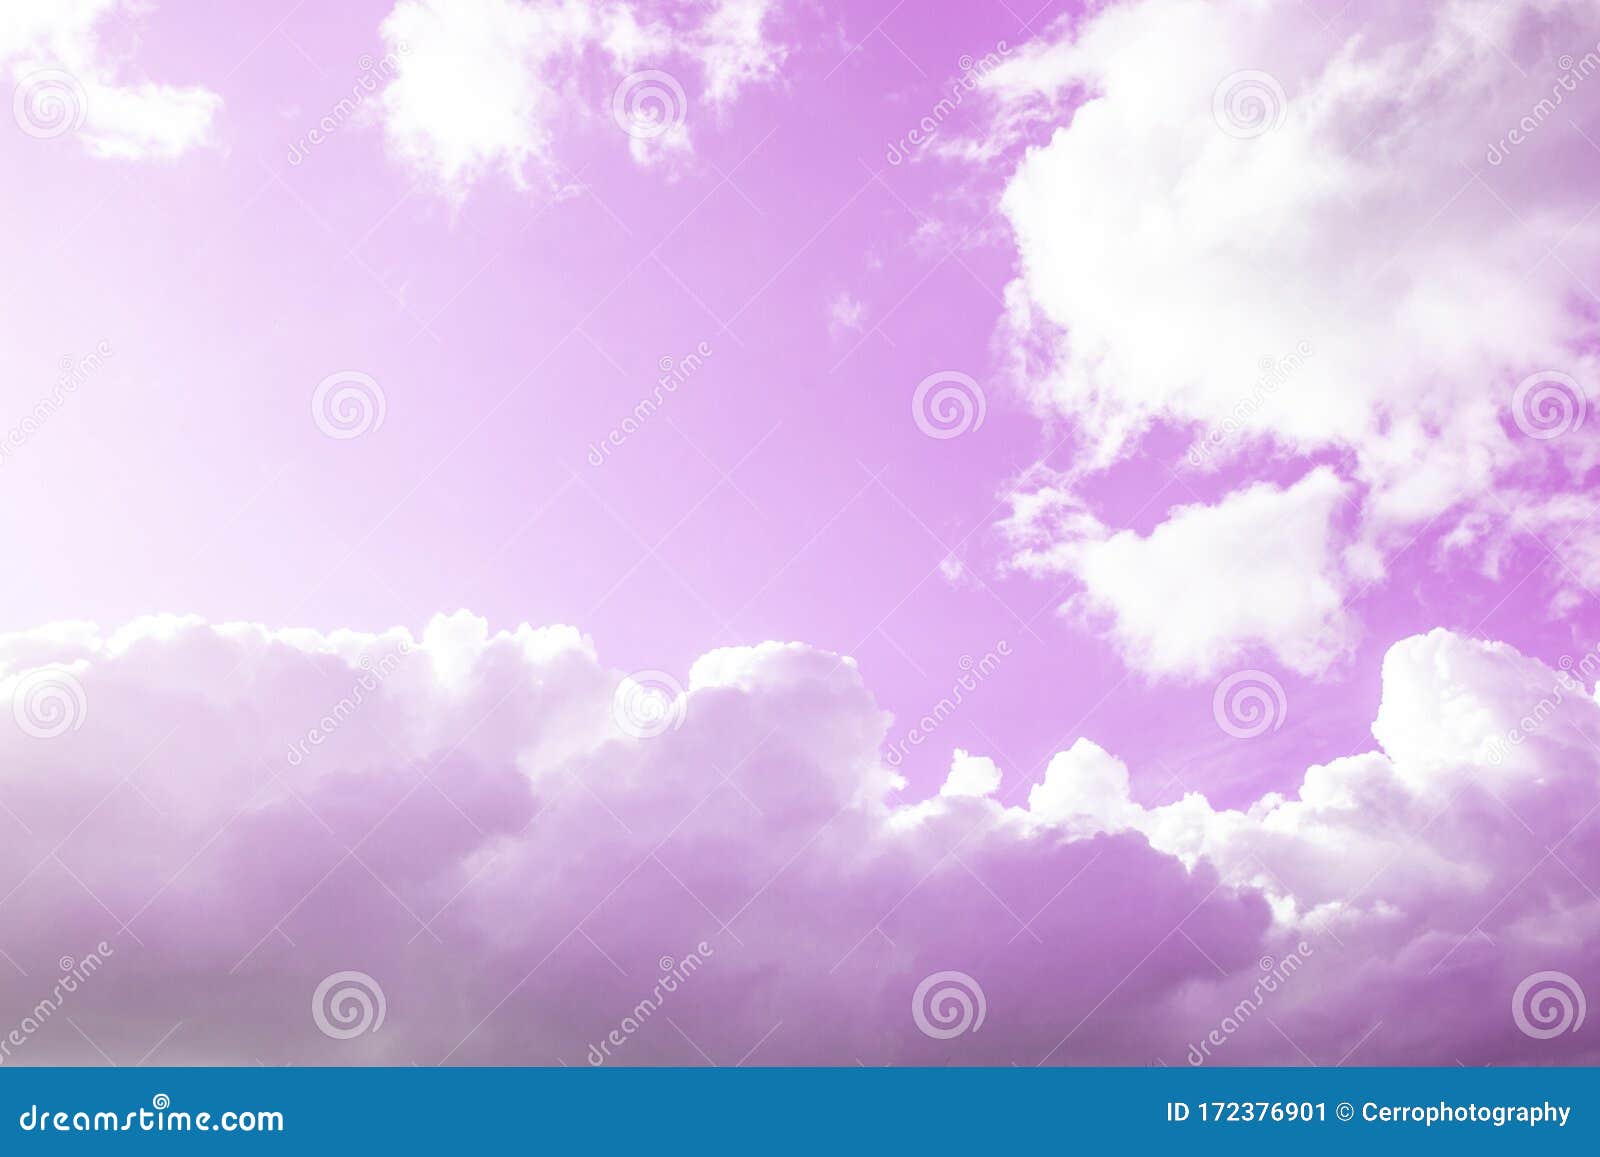 Mây tím và hồng trên nền trời sáng mịn - Hãy ngắm nhìn bức tranh huyền ảo này và cảm nhận sự tuyệt vời của thiên nhiên. Với sắc màu tím và hồng nhẹ nhàng, kết hợp với nền trời trong sáng sẽ khiến bạn cảm thấy yên bình và đầy tràn năng lượng.